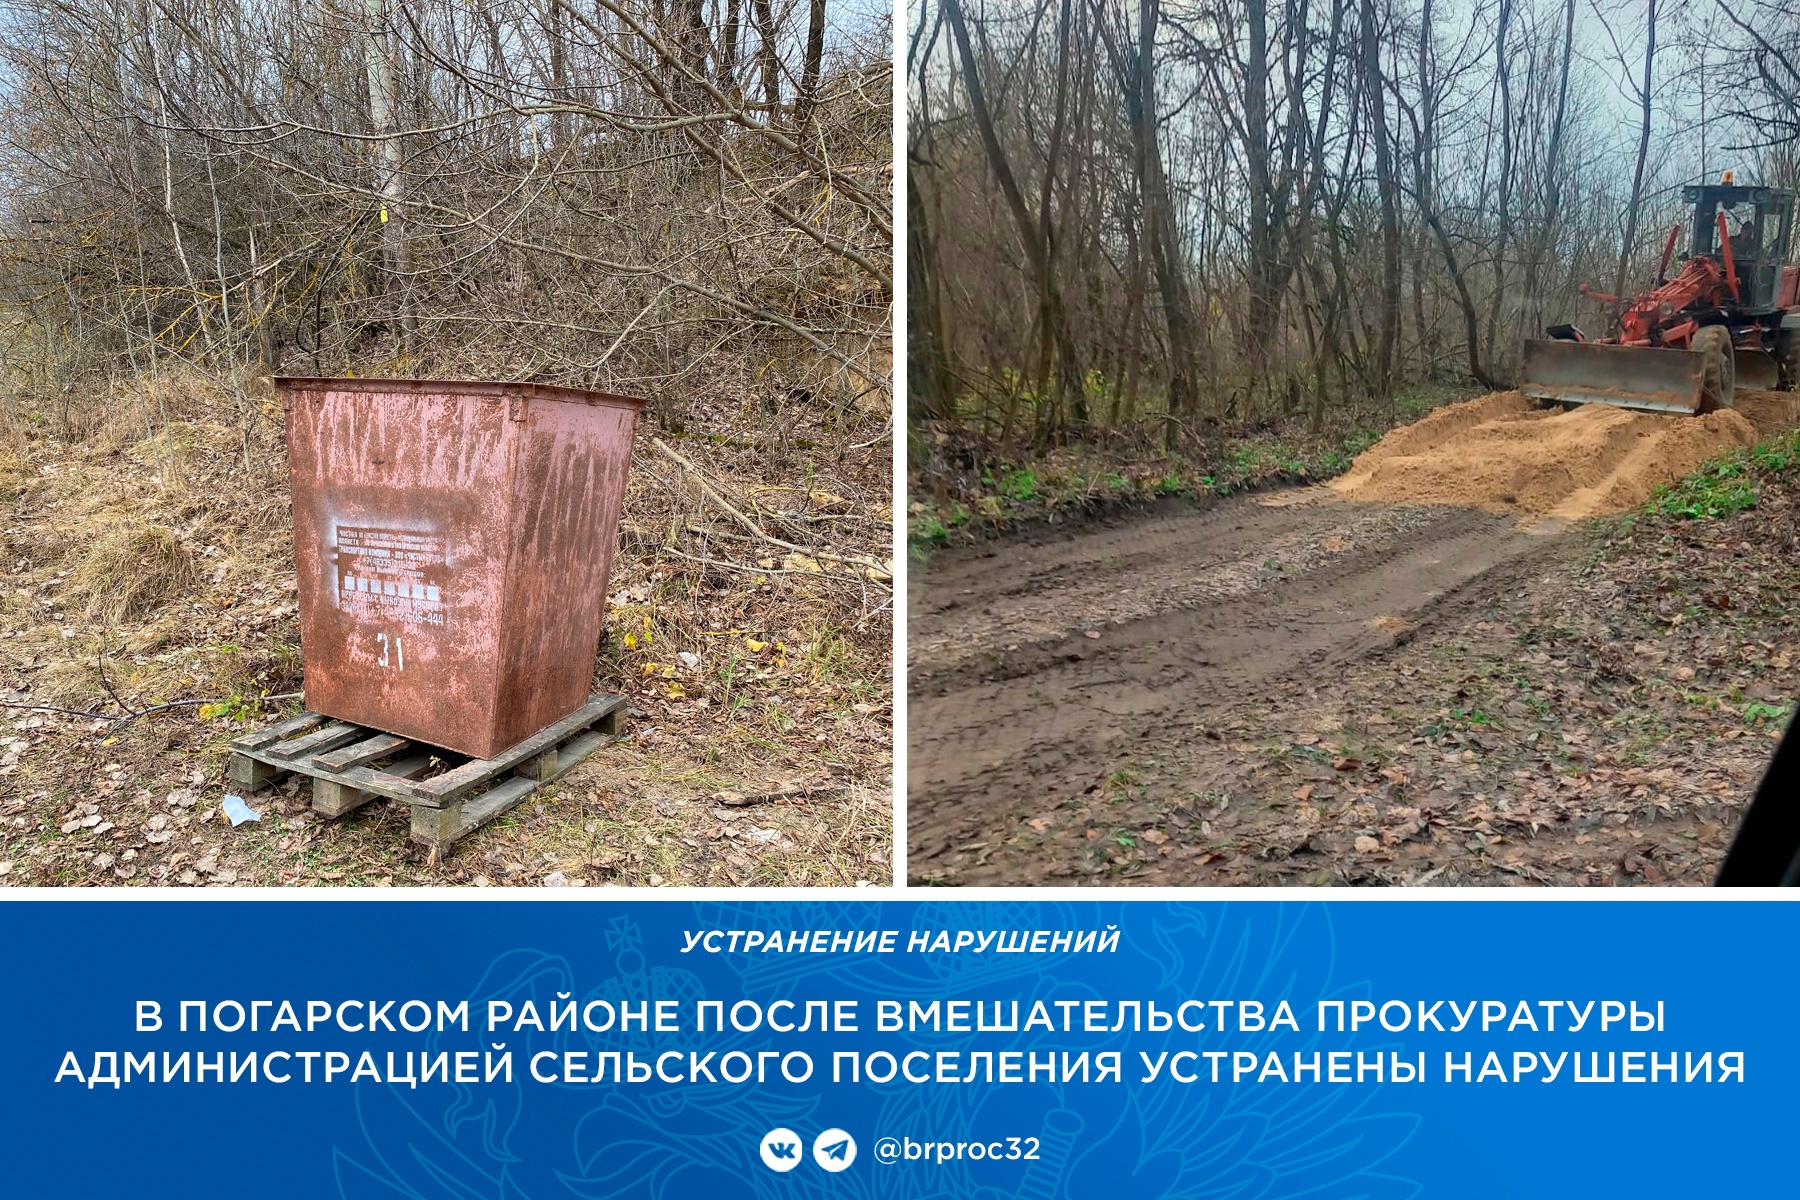 В брянском селе Балыкино отремонтировали дорогу и установили мусорный контейнер